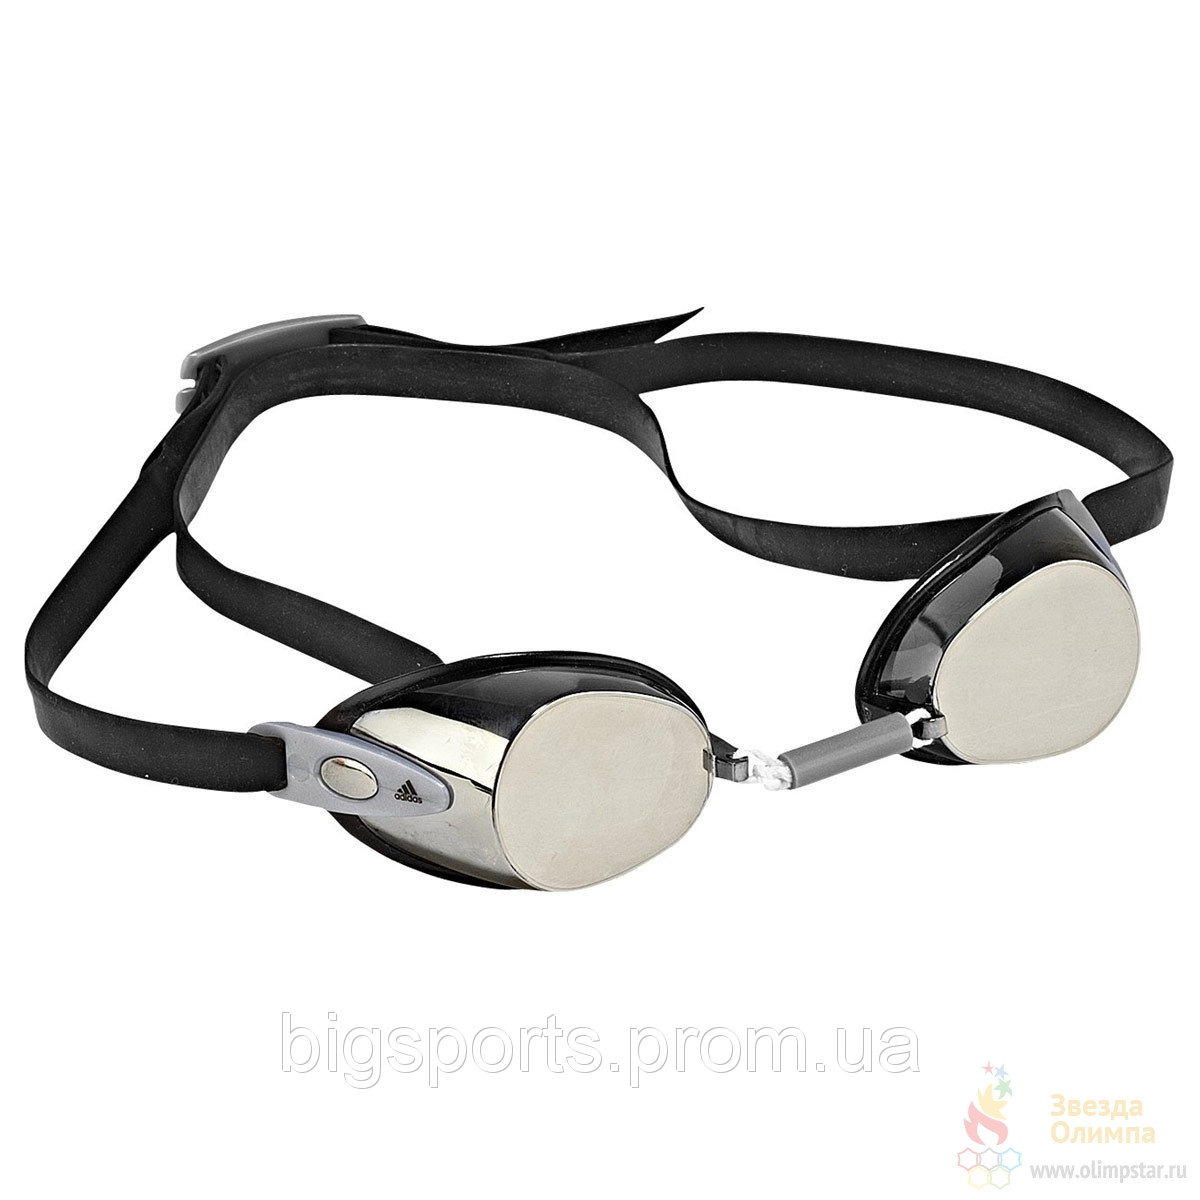 стартовые очки Adidas Hydnator X14539 со скидкой